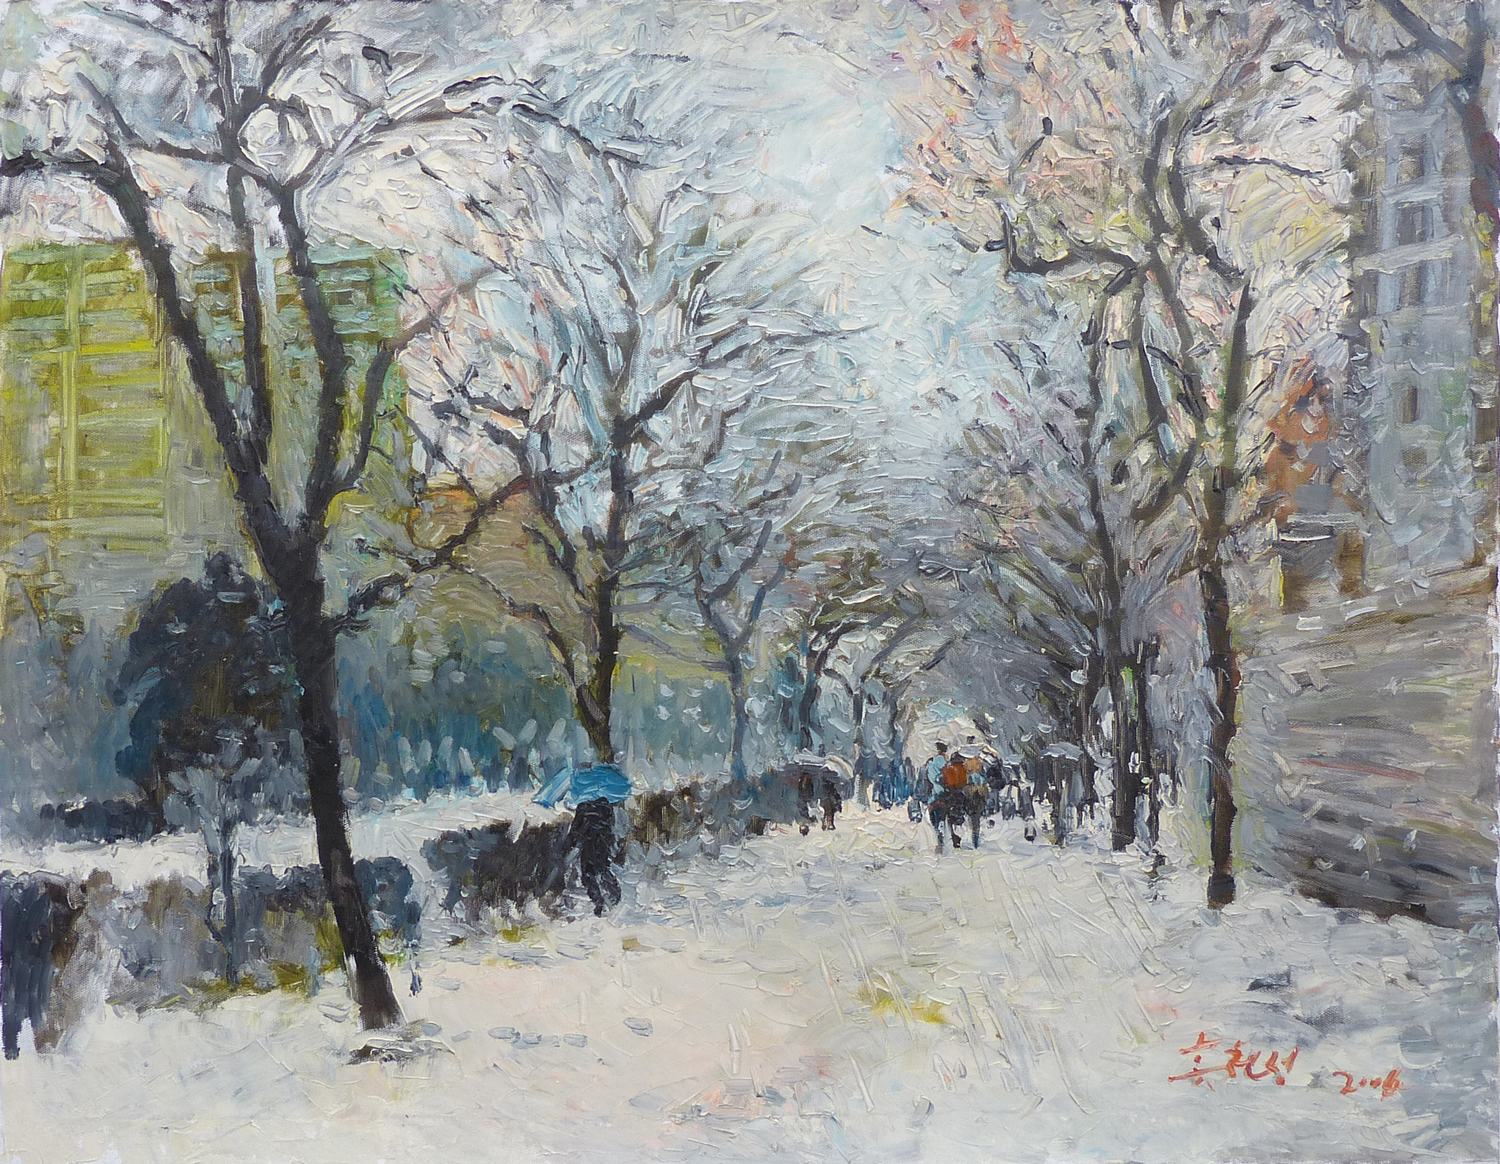  【朝鲜油画】雪后的街景